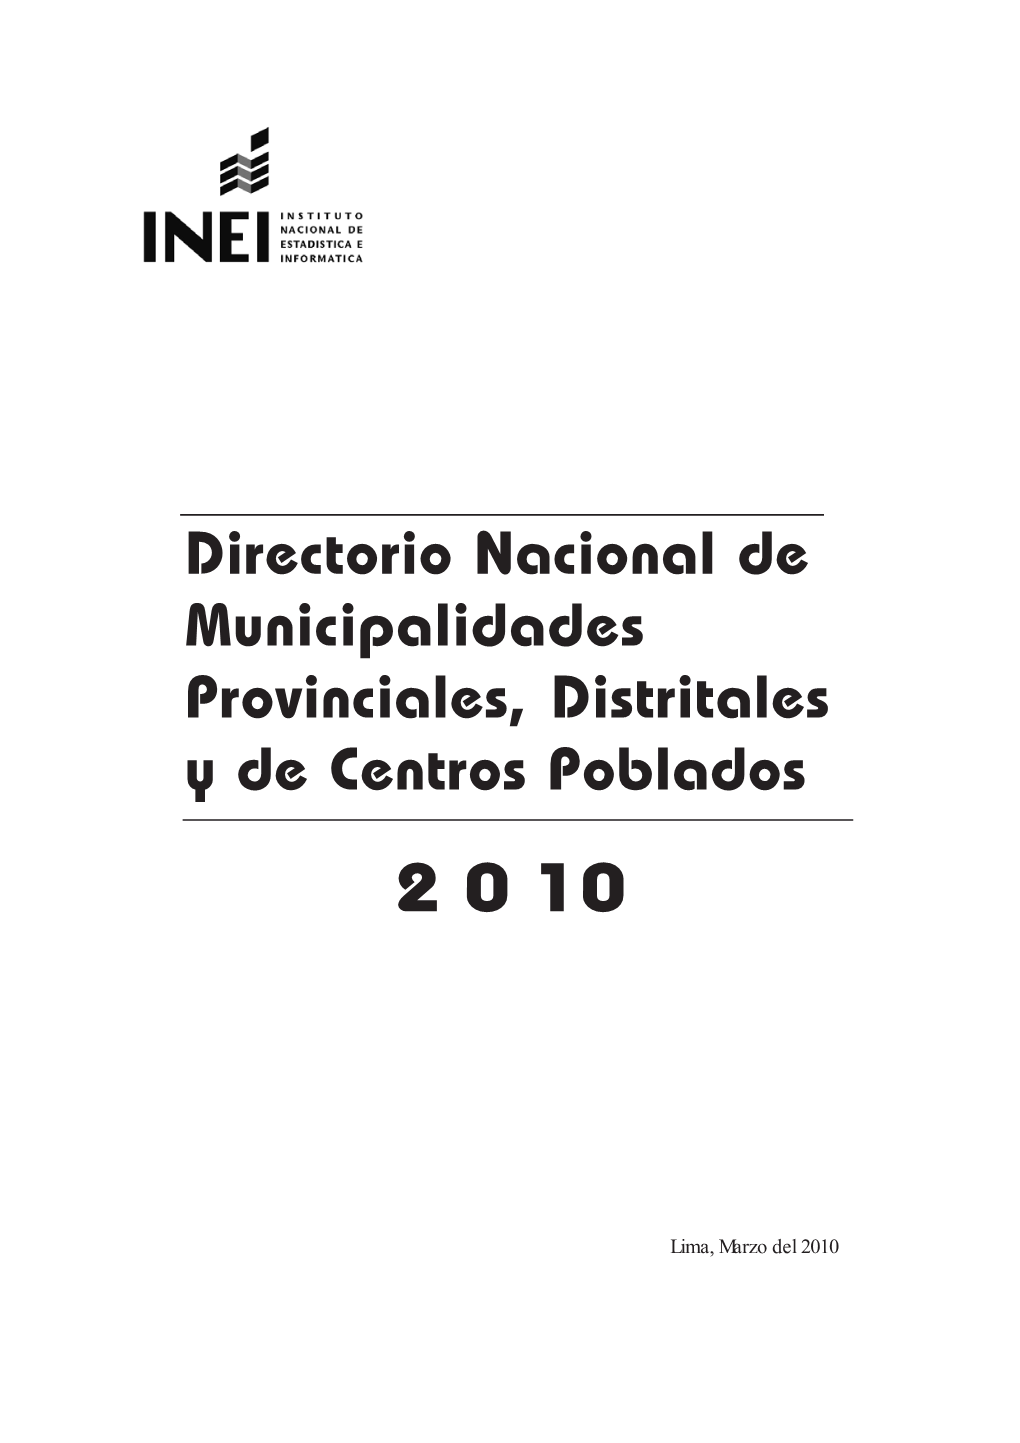 Directorio Nacional De Municipalidades Provinciales, Distritales Y De Centros Poblados 2 0 10